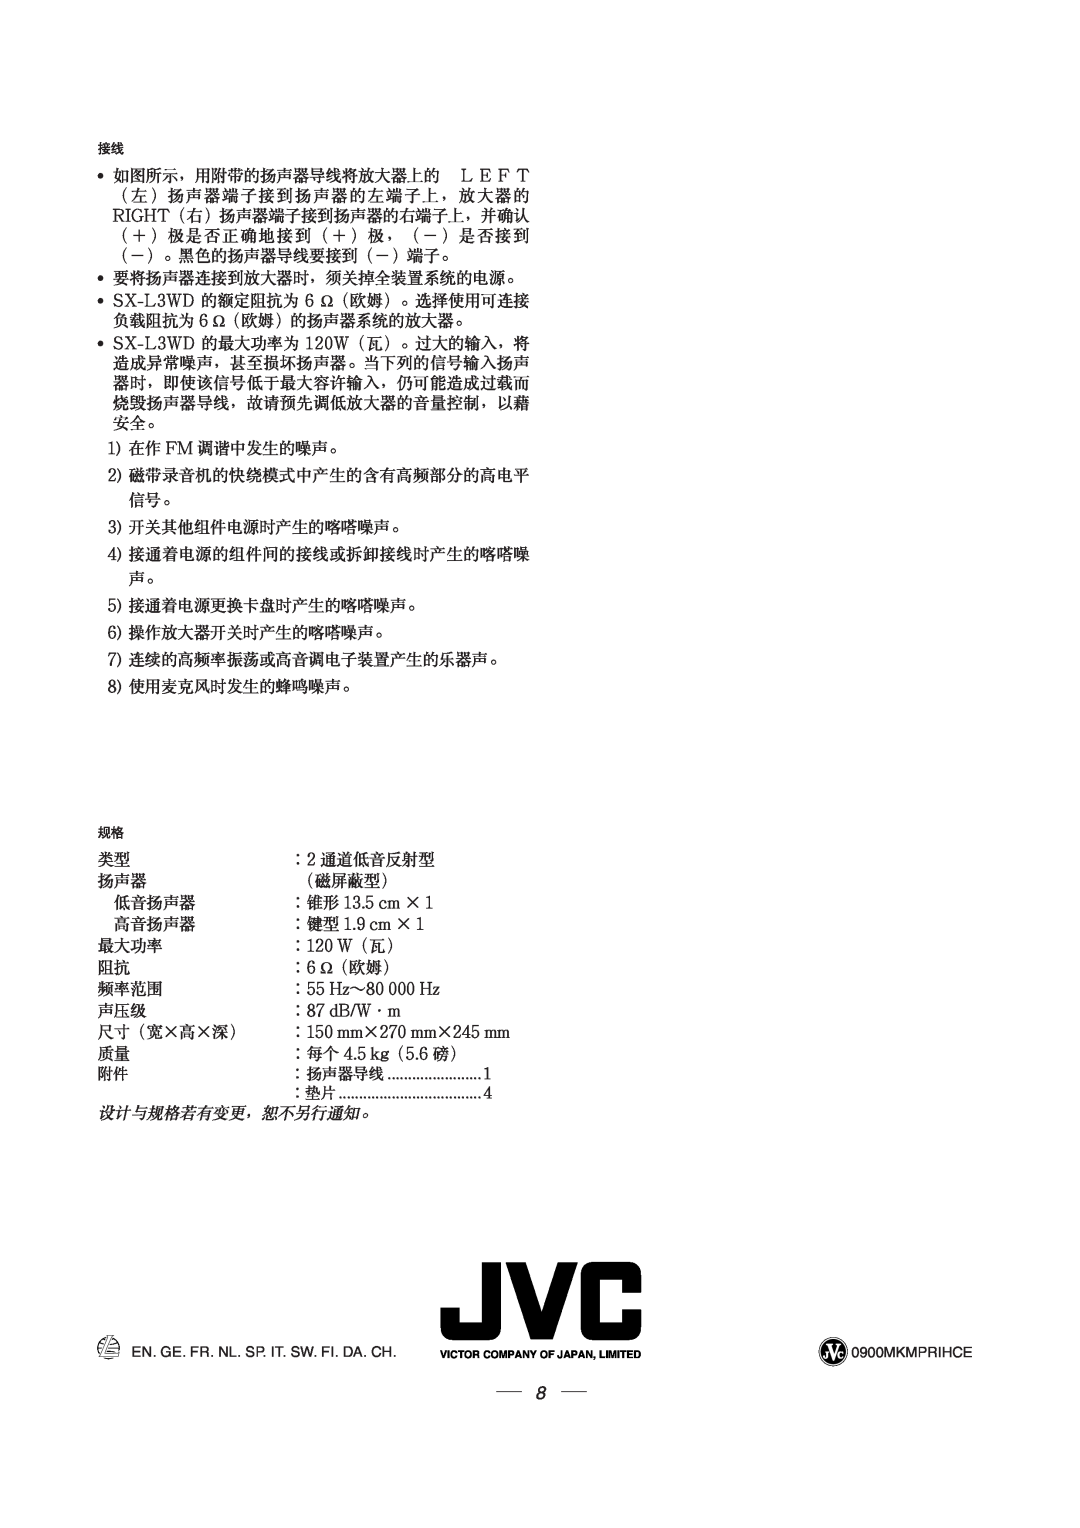 JVC SX-L3WD manual ∶锥形 13.5 cm ×, ∶键型 1.9 cm ×, ∶120 W（瓦）, ∶55 Hz～80 000 Hz, ∶87 dB/W·m, 尺寸（宽×高×深） ∶150 mm×270 mm×245 mm 